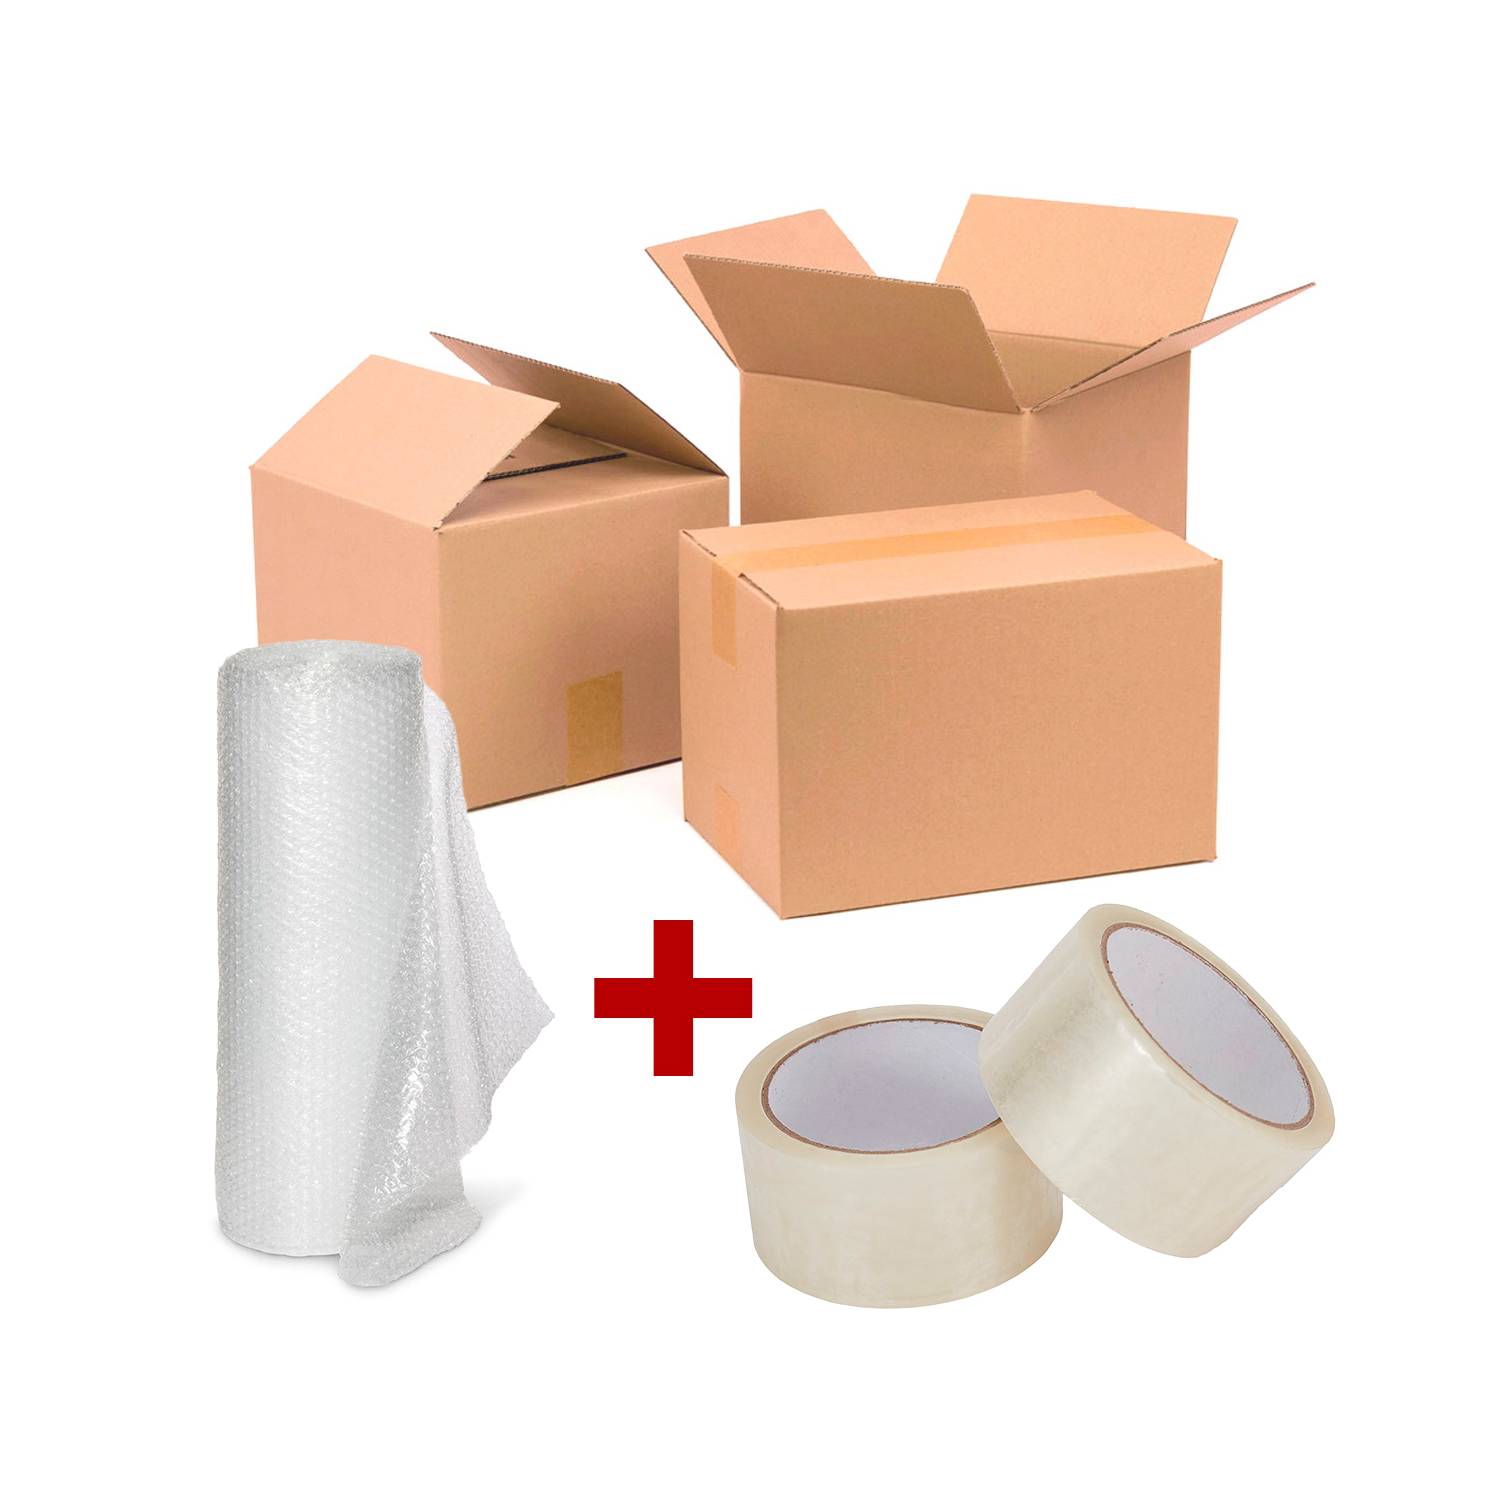 Pack Mudanza 10 Cajas Embalaje + Plastico Burbuja + 2 Cintas